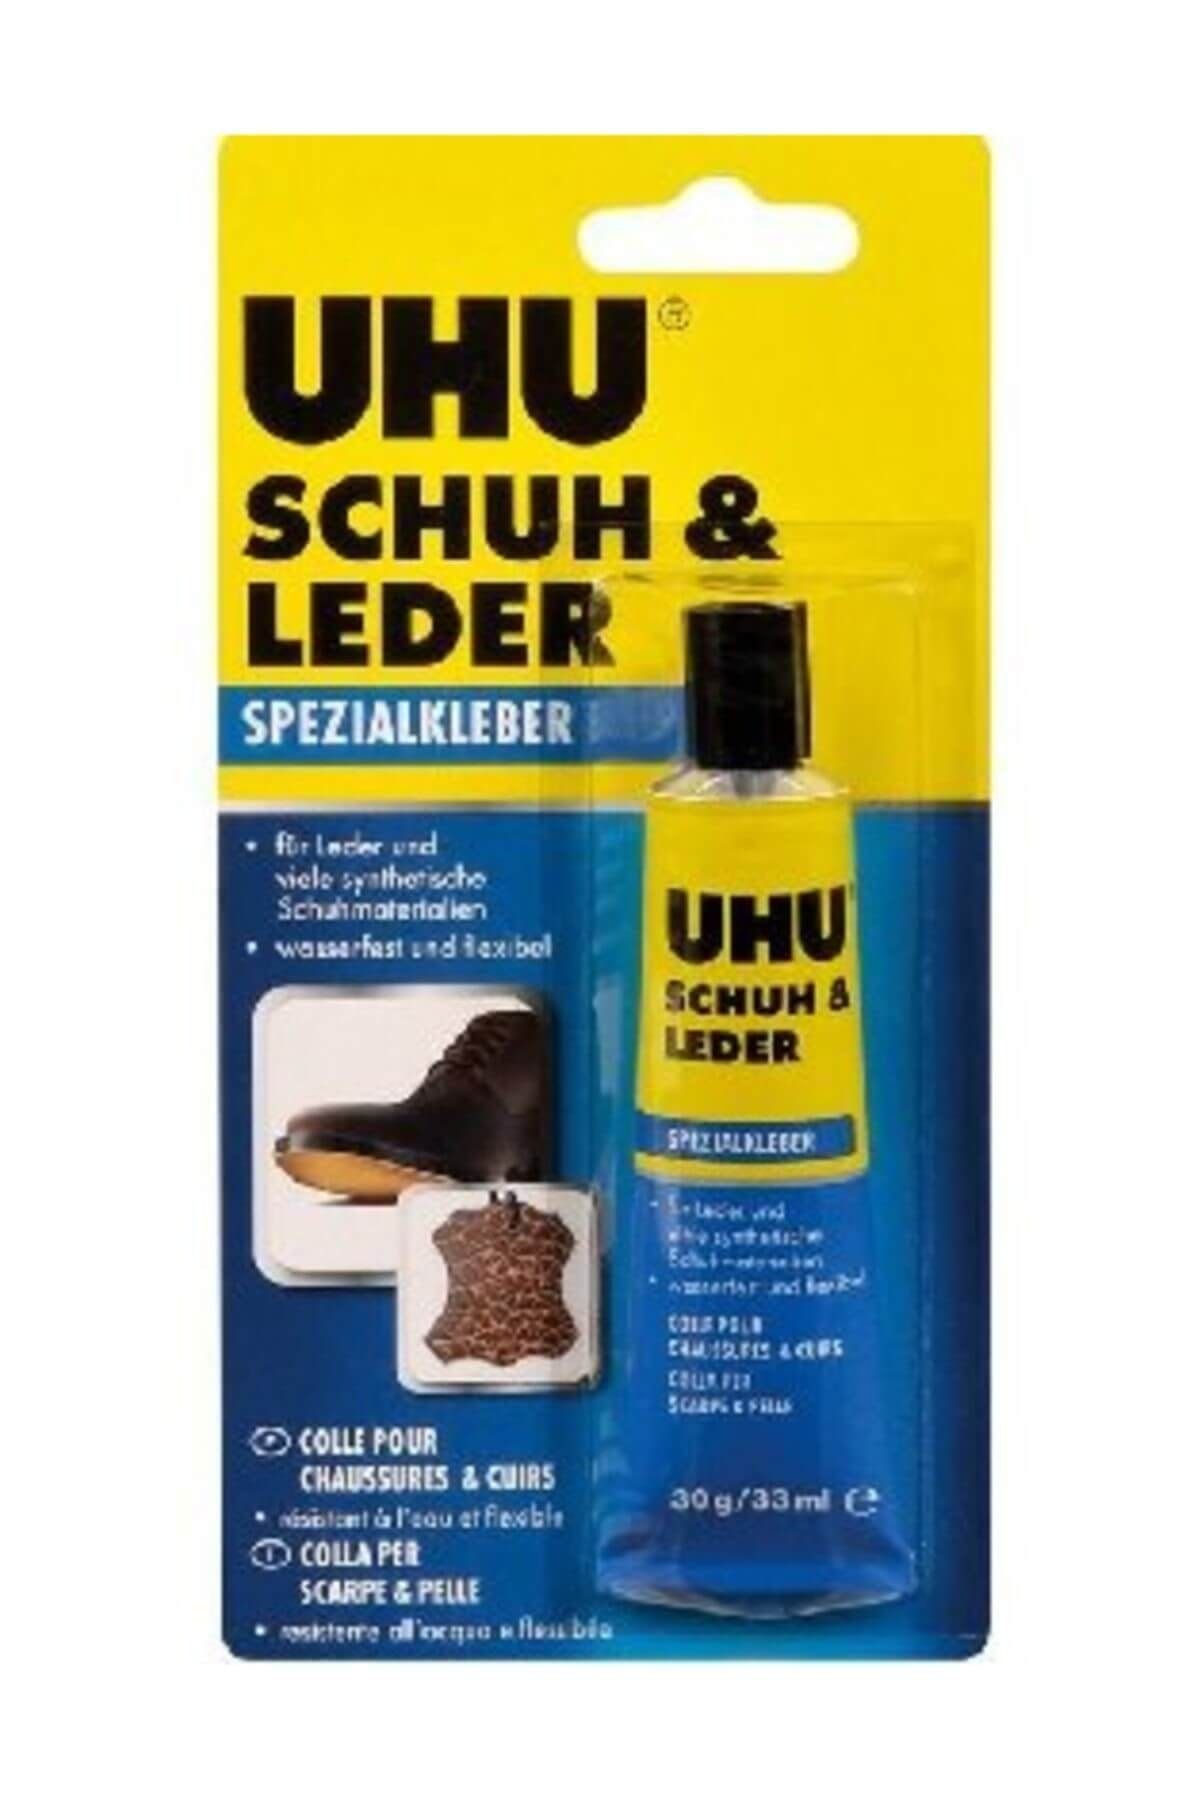 Uhu Schuh & Leder Deri Ayakkabı Ve Çanta Yapıştırıcısı